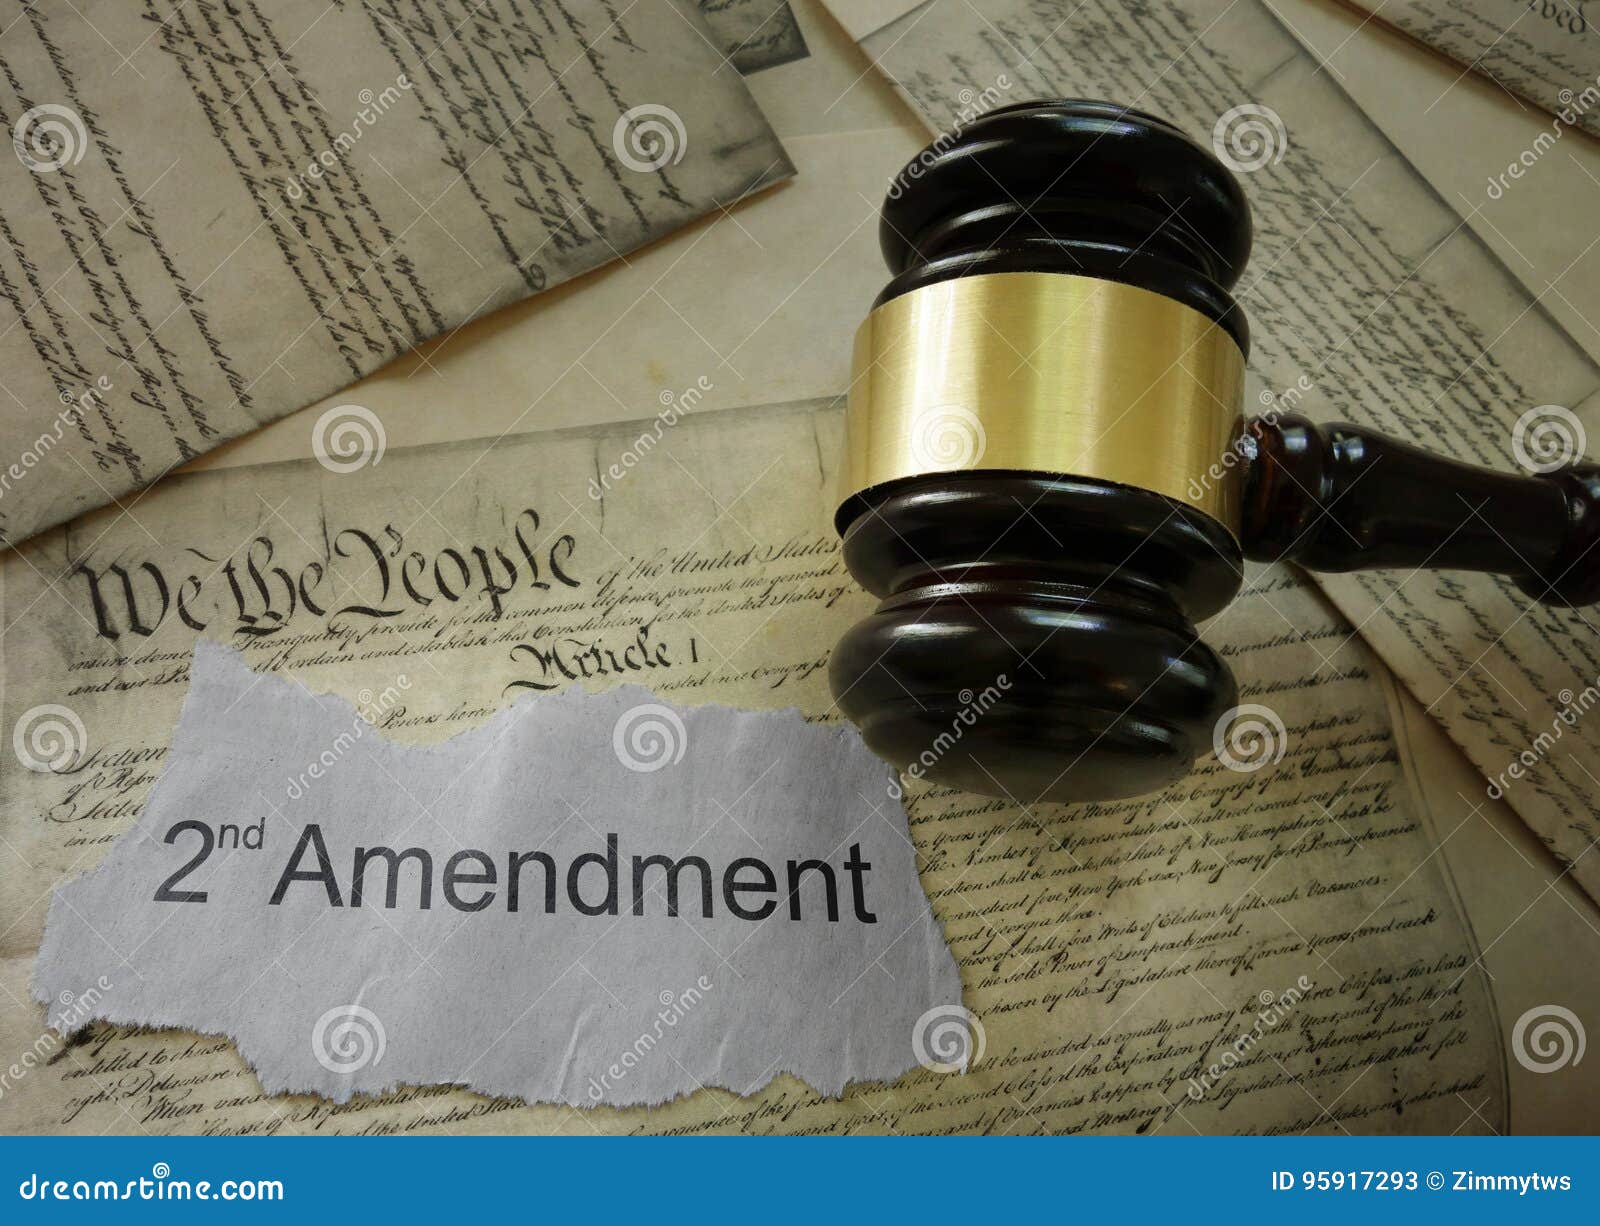 second amendment concept